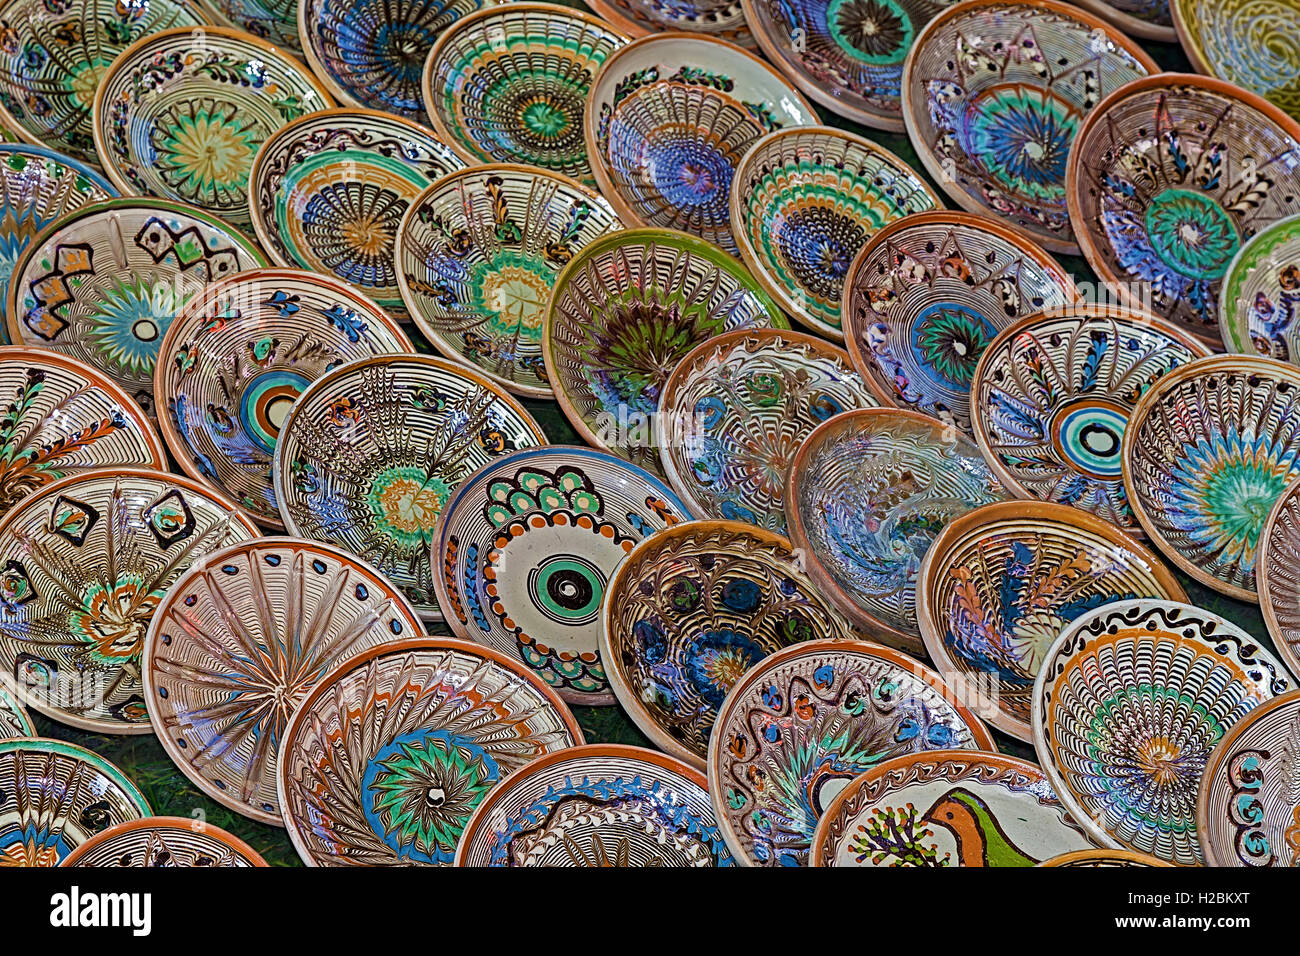 Avec fond de céramique traditionnelle roumaine dans la forme des plaques, peintes avec des motifs spécifiques de Horezu. Banque D'Images